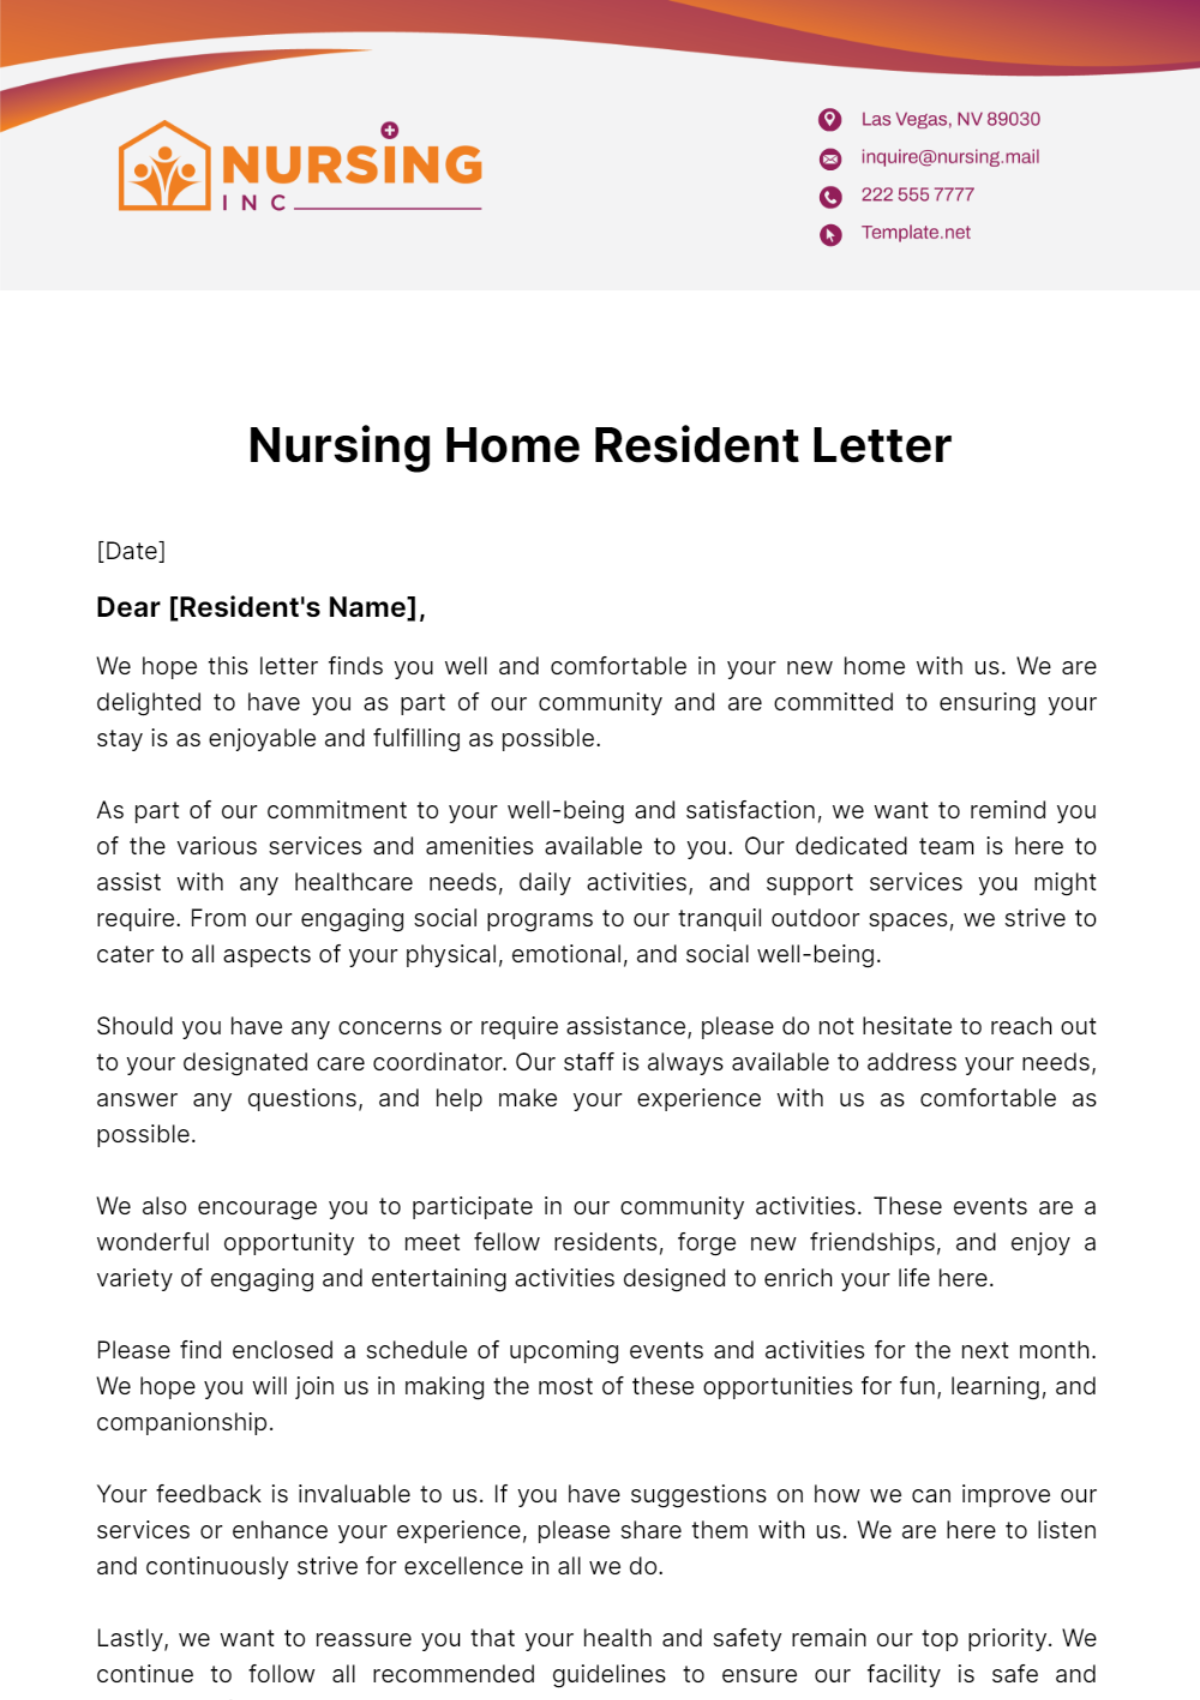 Nursing Home Resident Letter Template